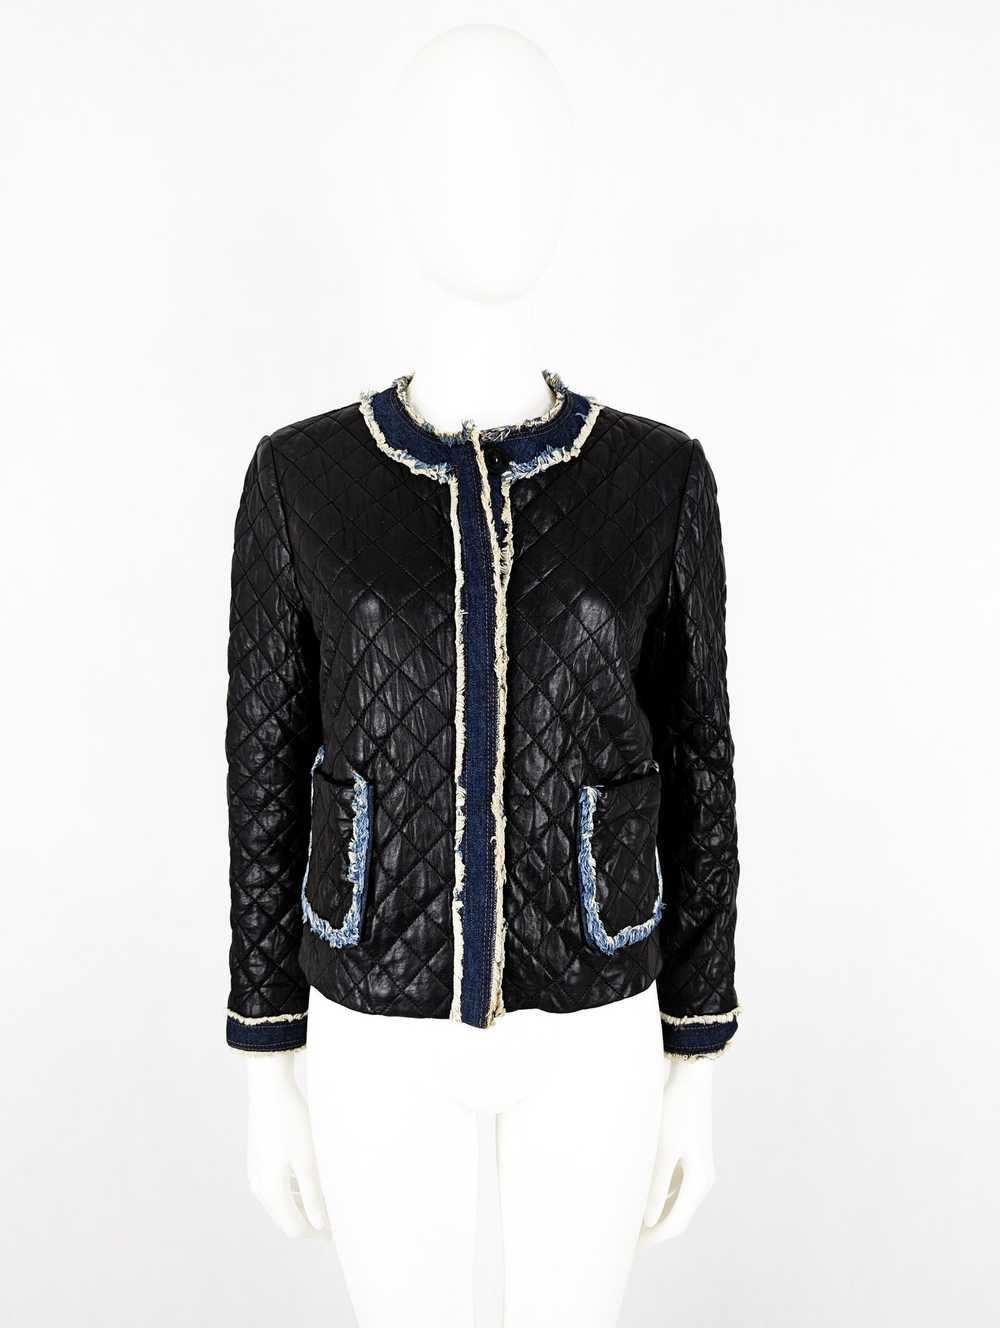 Dolce & Gabbana Dolce Gabbana lambskin coat jacket - image 10